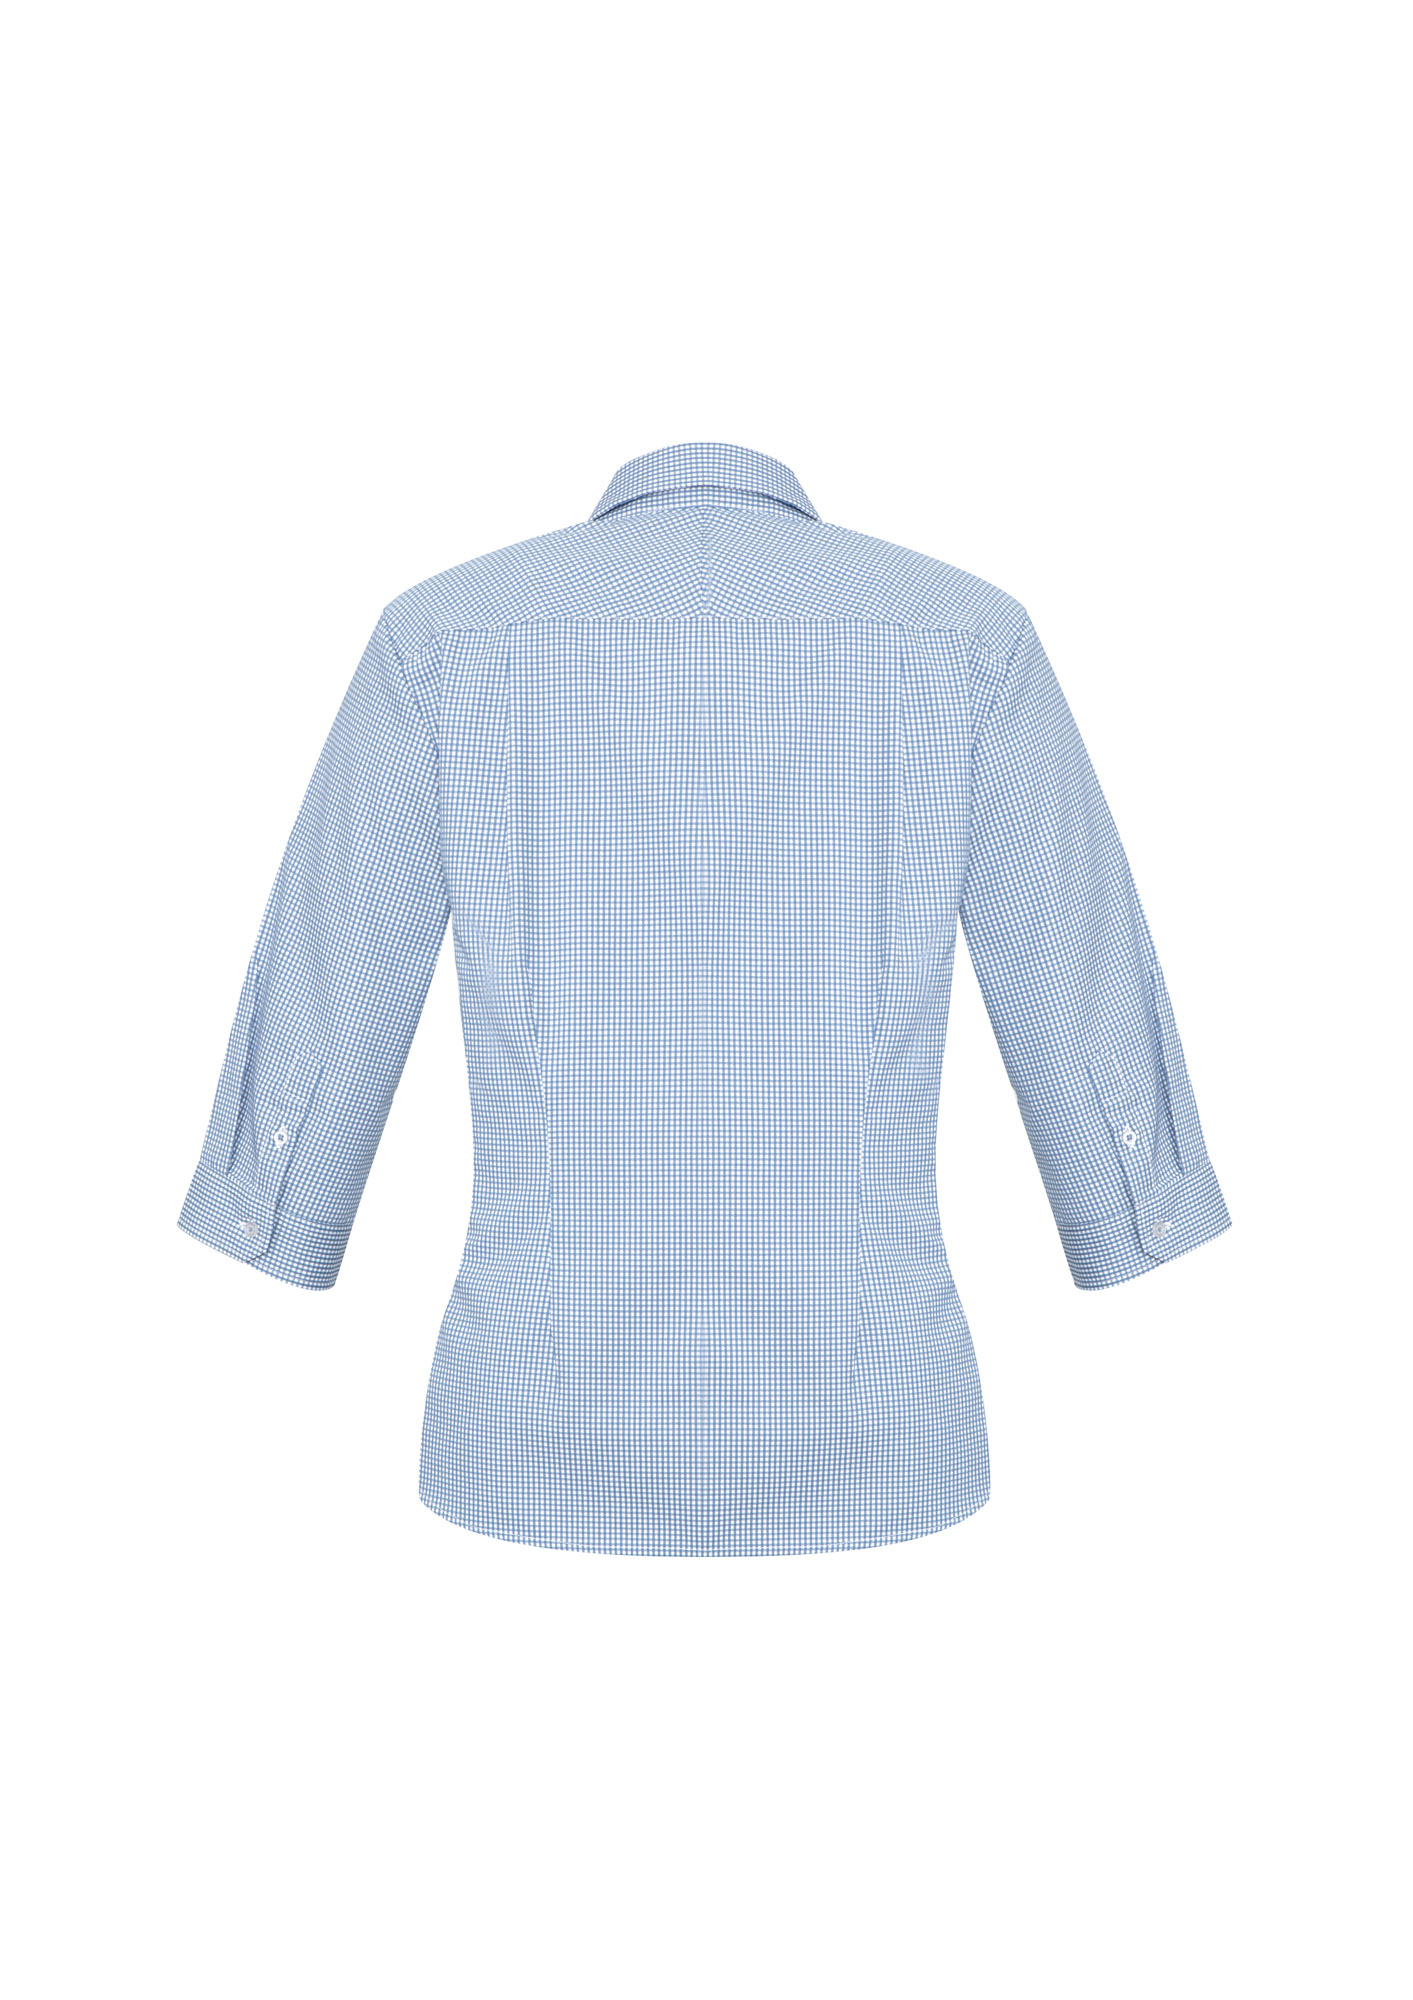 Ladies Blue Ellison Shirt - The Uniform Edit | Office Uniform